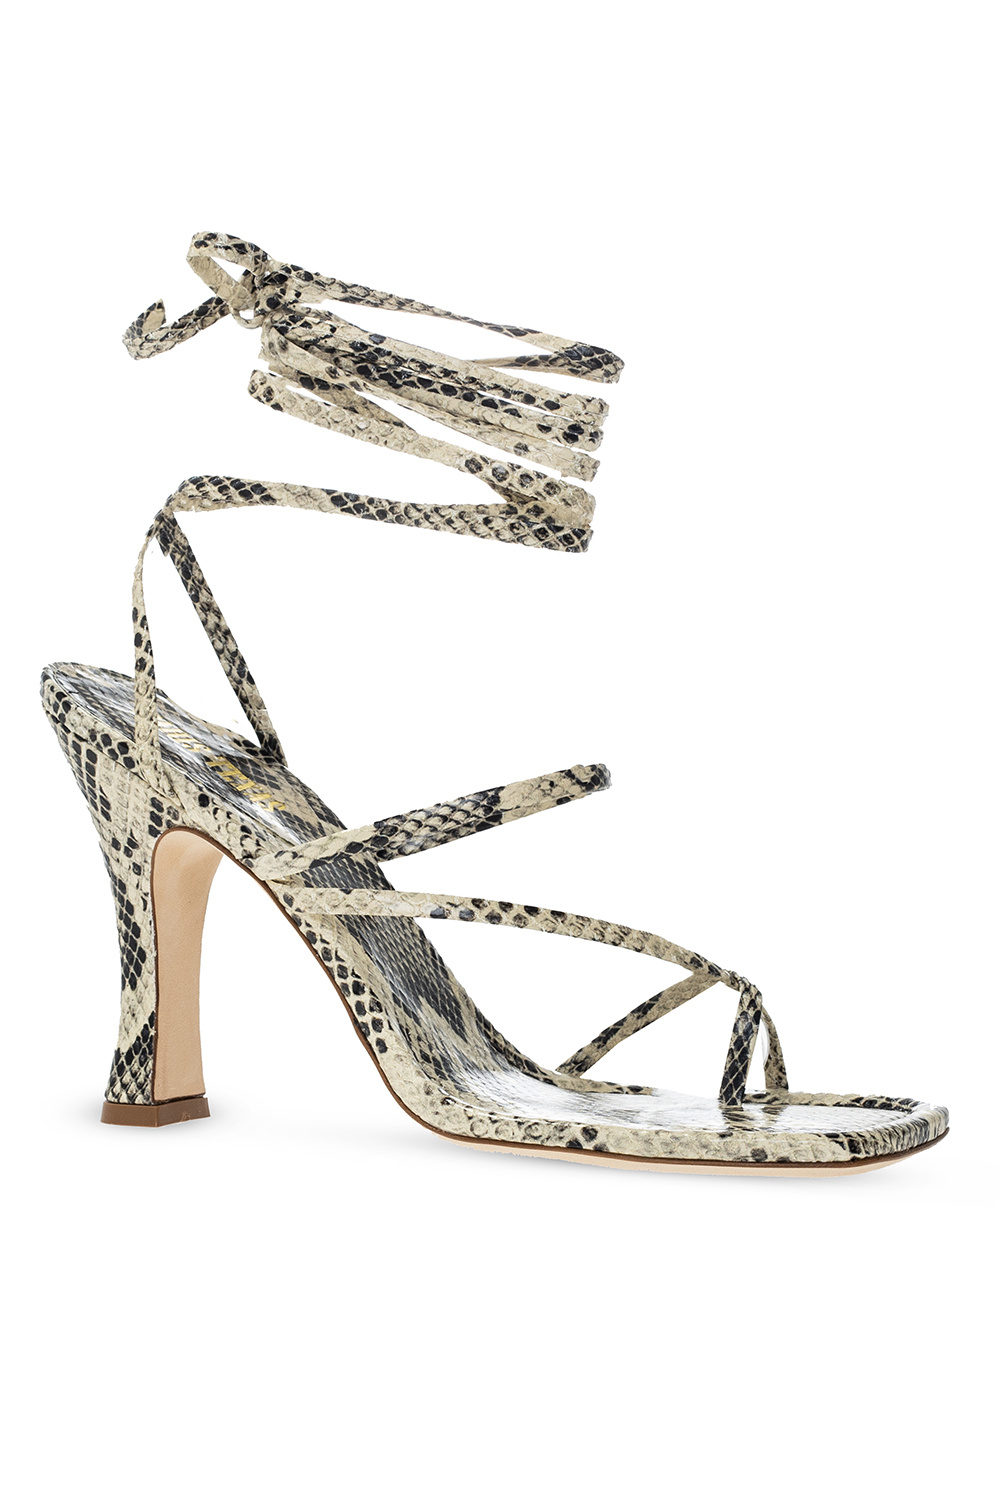 Paris Texas ‘Mirta’ heeled sandals